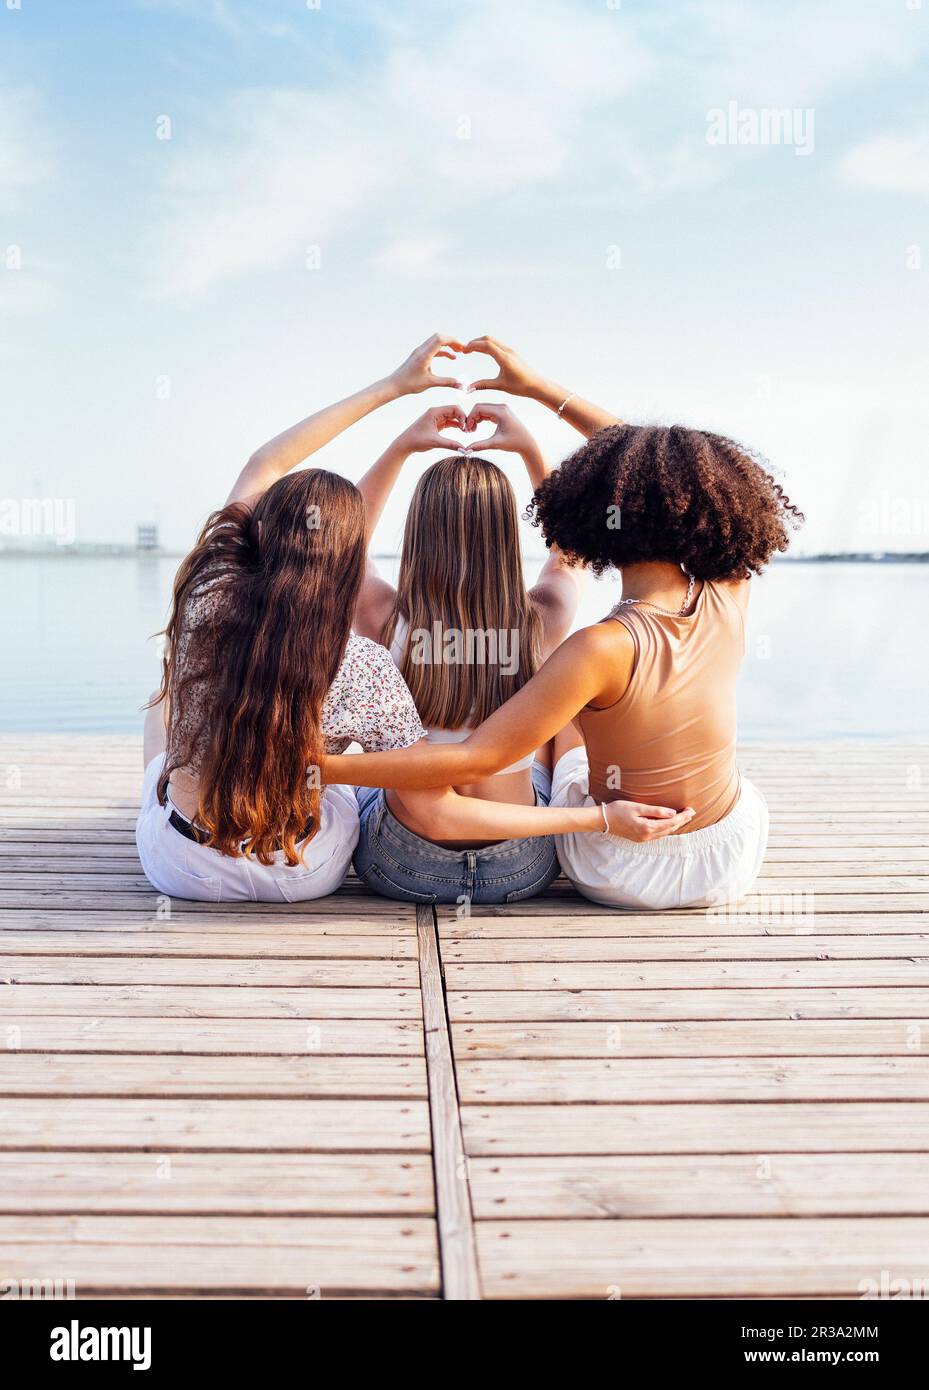 Trois adolescentes de groupes ethniques différents montrent des symboles cardiaques avec leurs mains. Les adolescentes en vêtements décontractés s'assoient sur un pont en bois près de la rive Banque D'Images